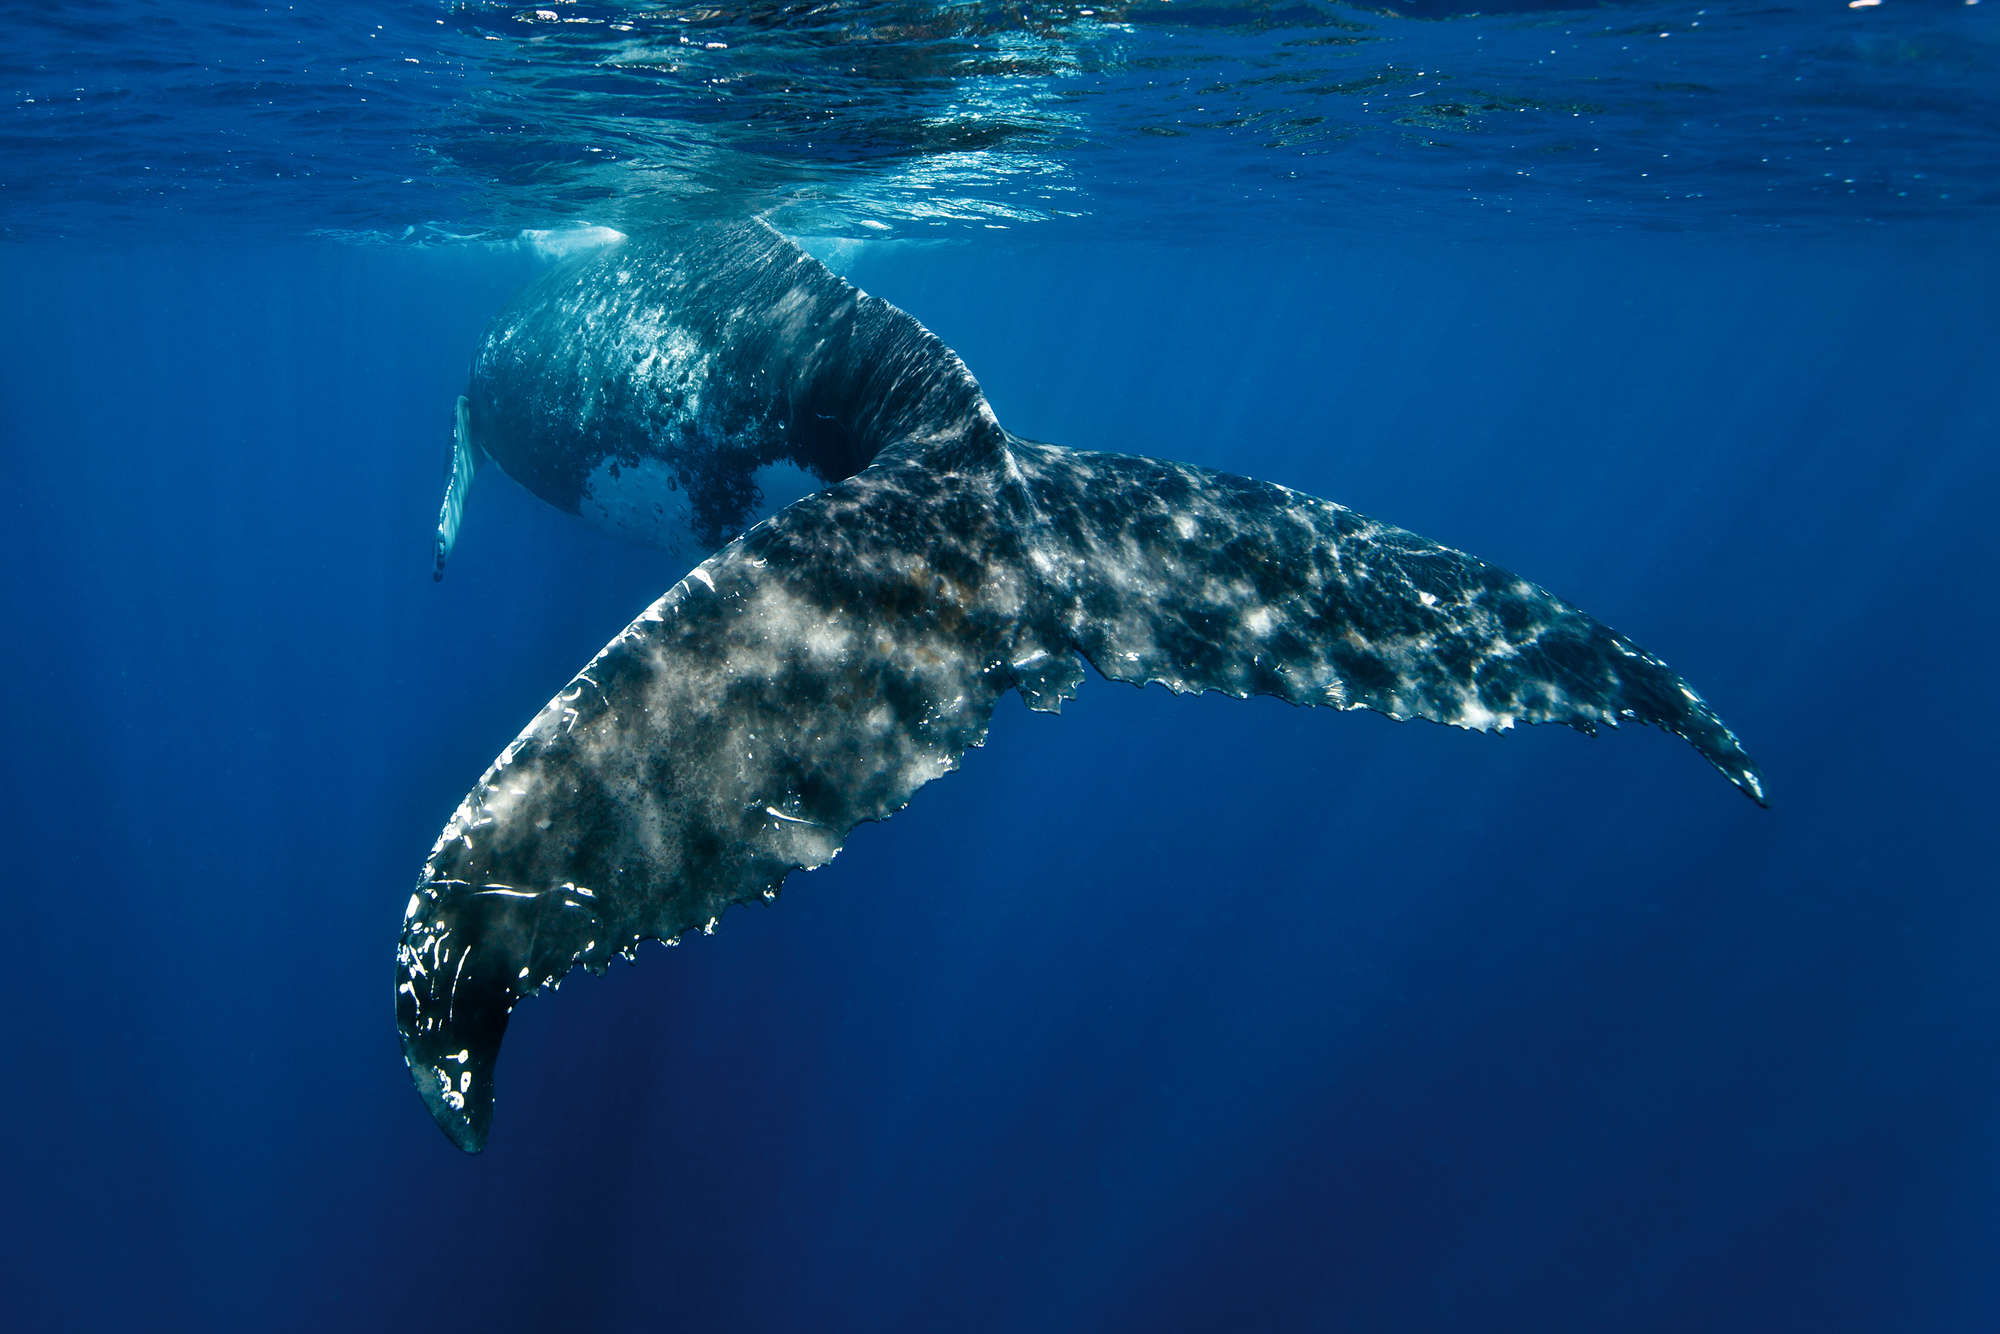             Marinebehang met walvisvin op mat glad vlies
        